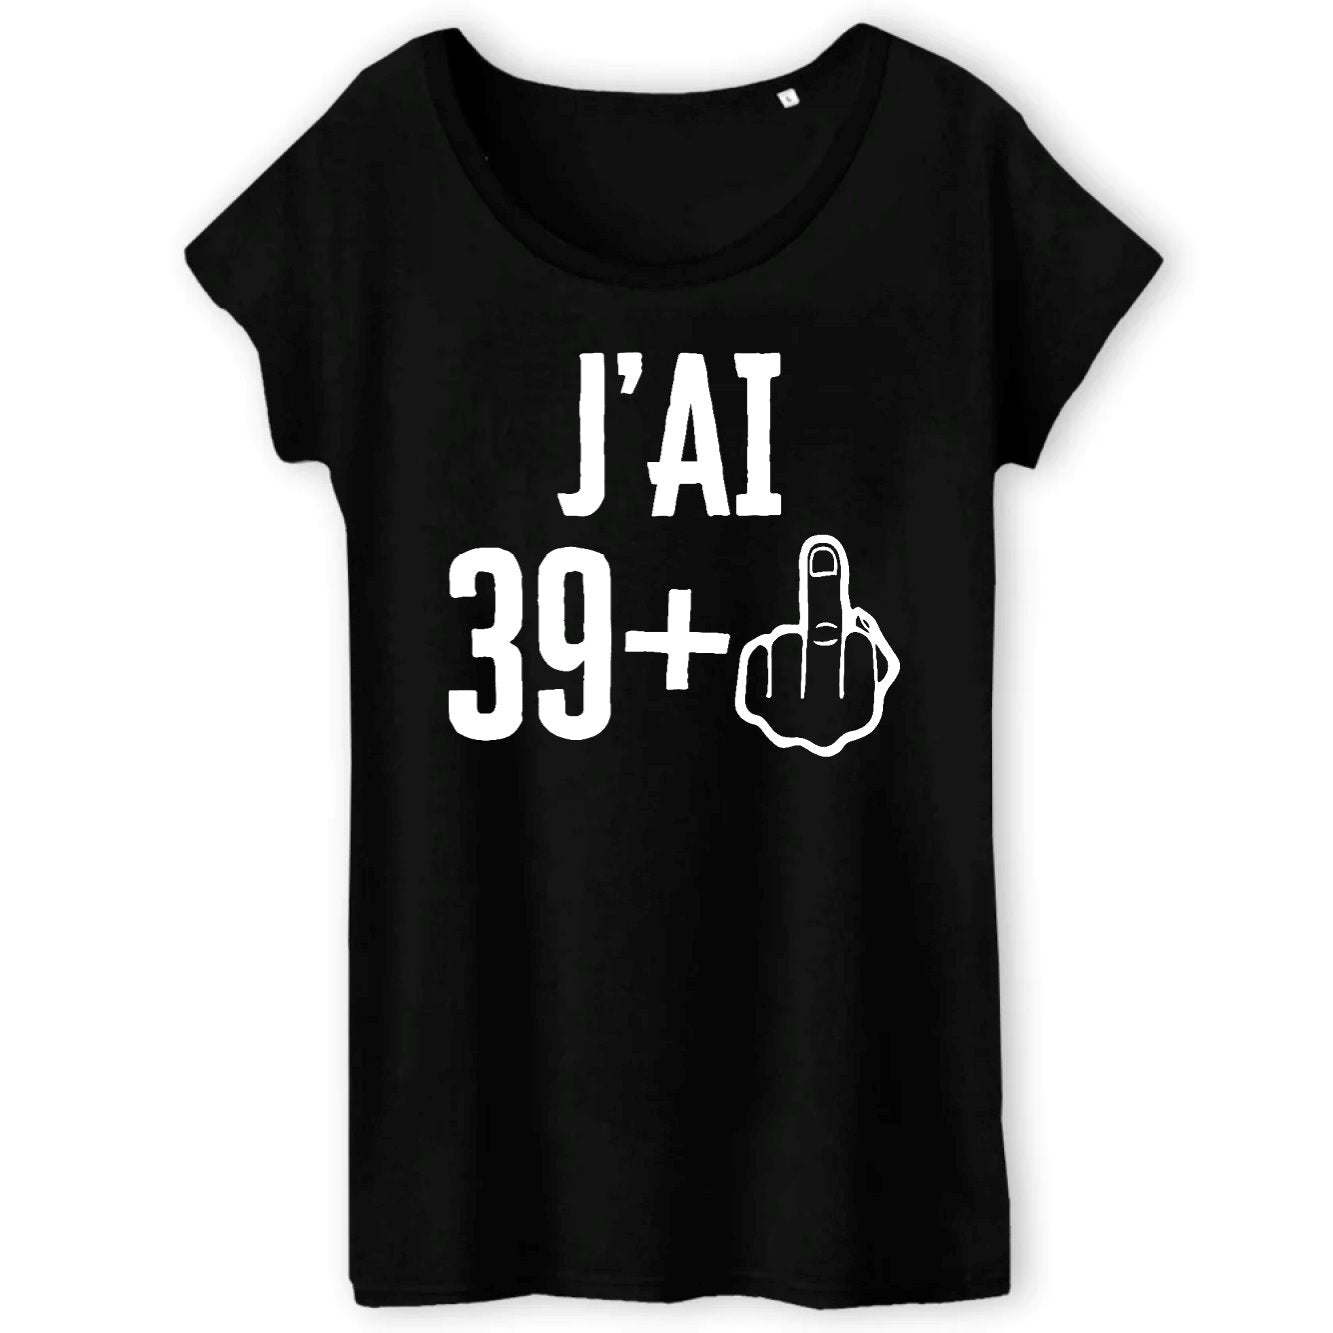 T-Shirt Femme J'ai 40 ans 39 + 1 